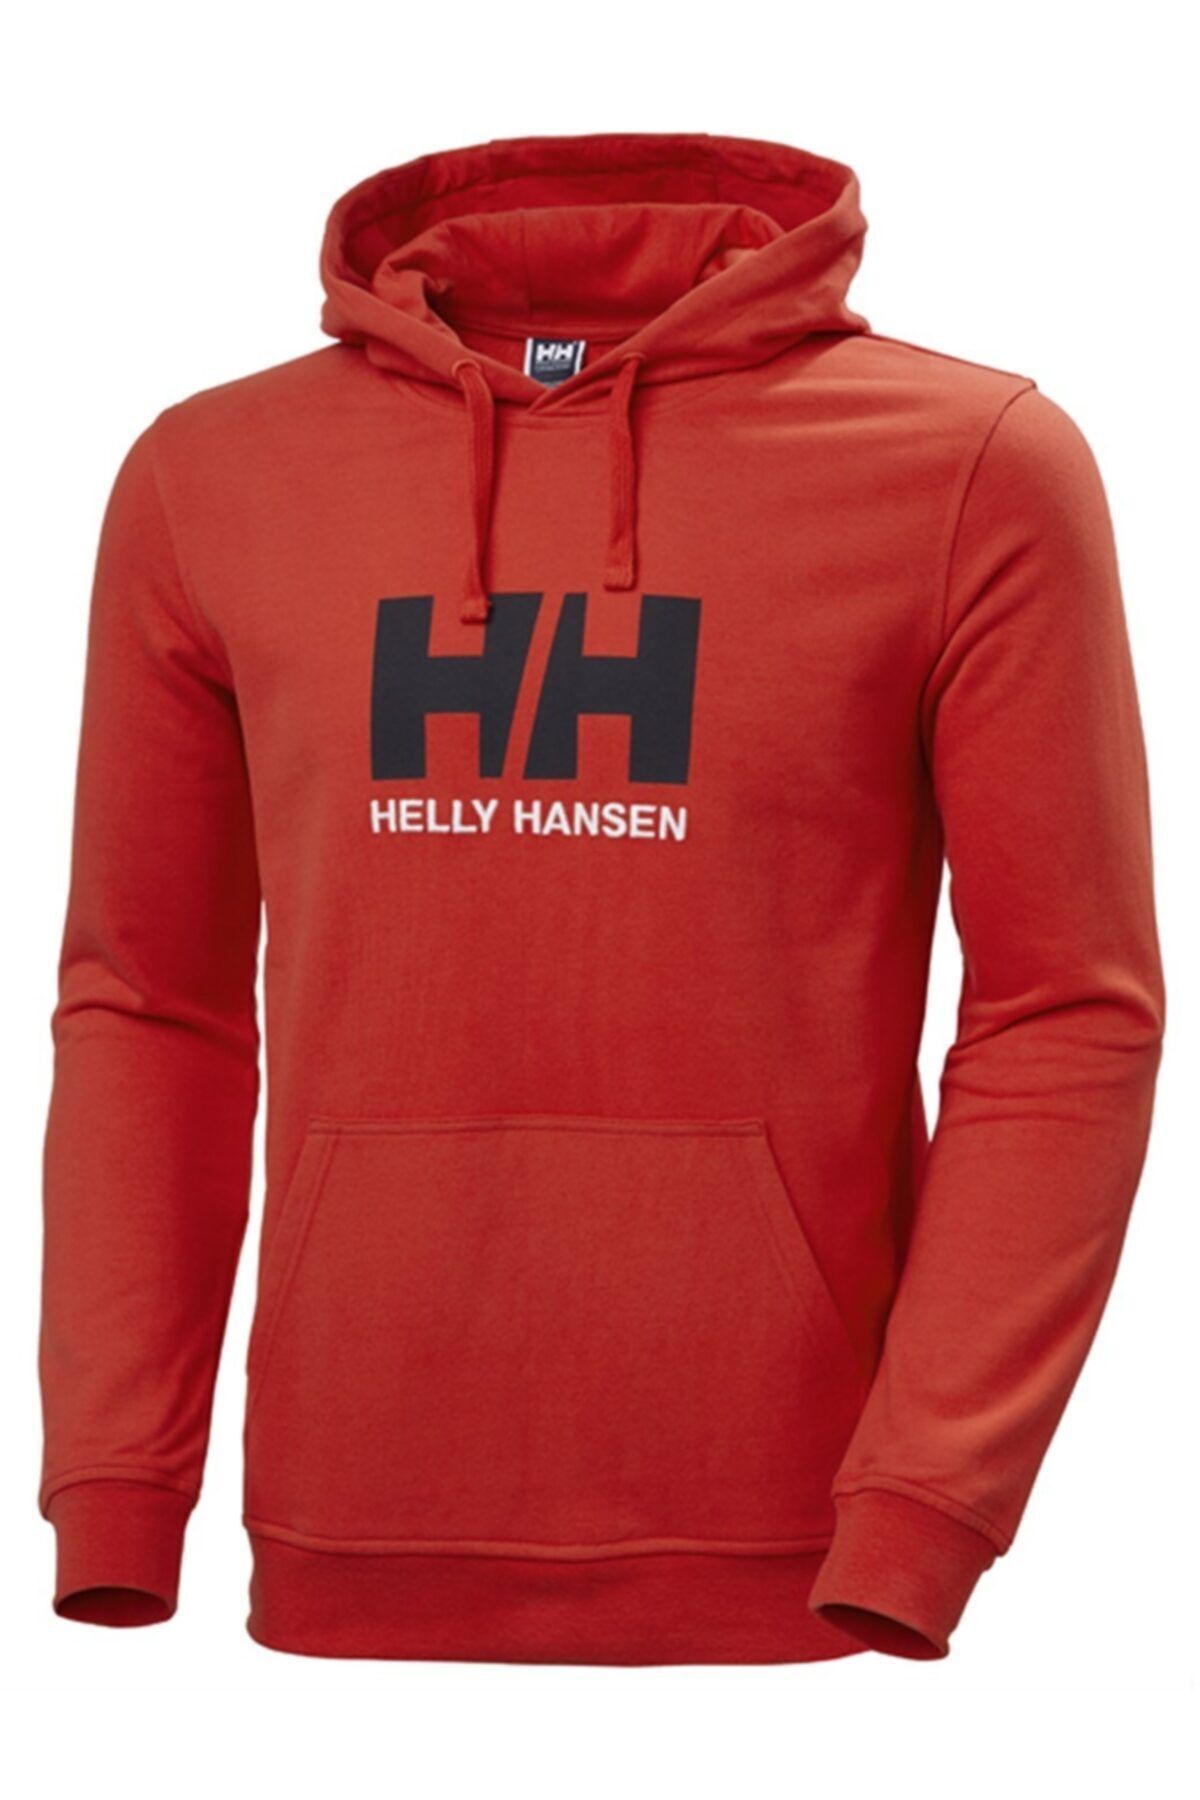 Helly Hansen Erkek Kırmızı Baskılı Sweatshirt